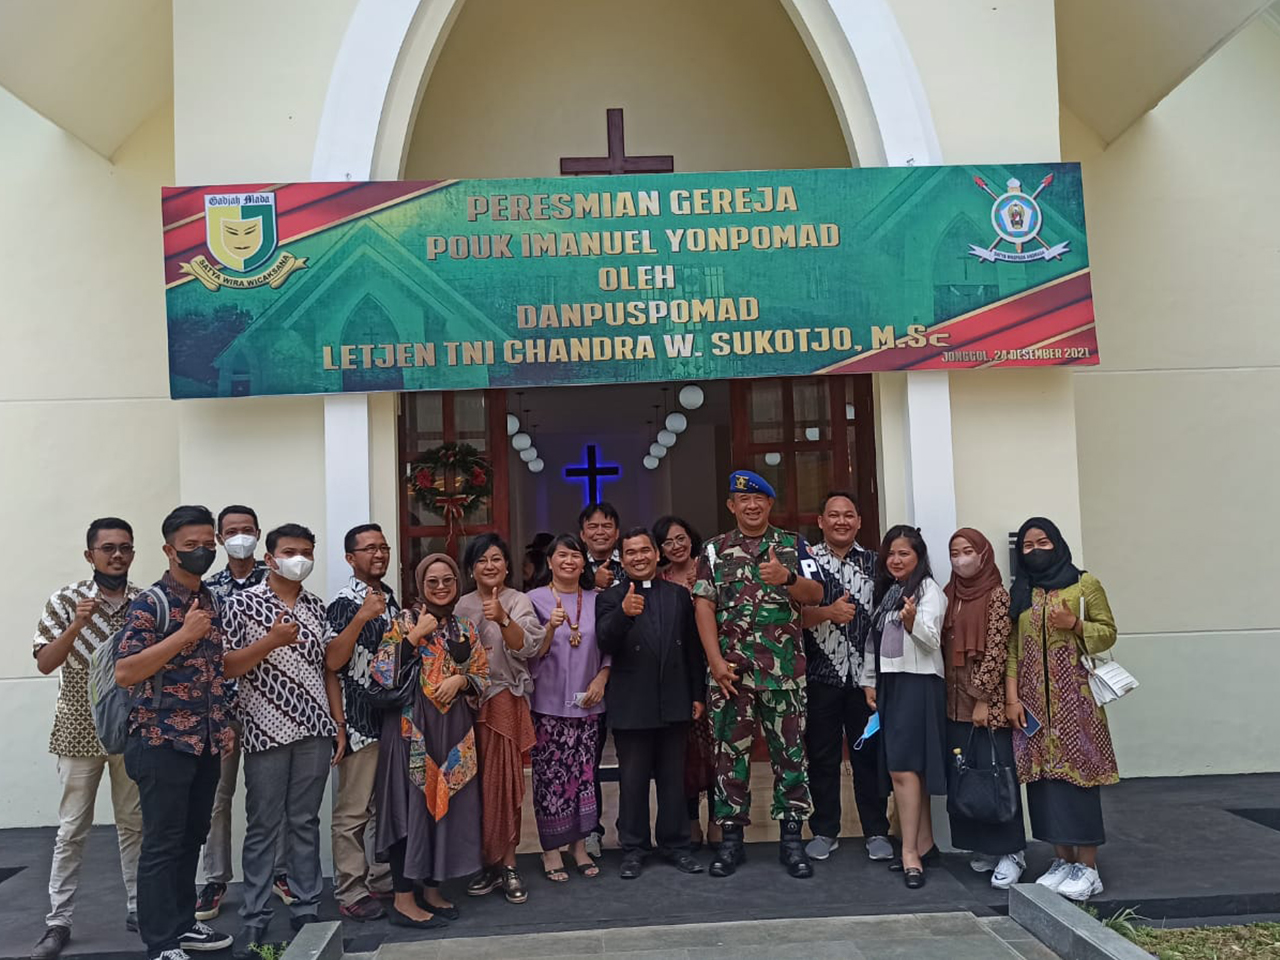 Renovasi Gereja POUK Immanuel Yonpomad Jonggol Jawa Barat